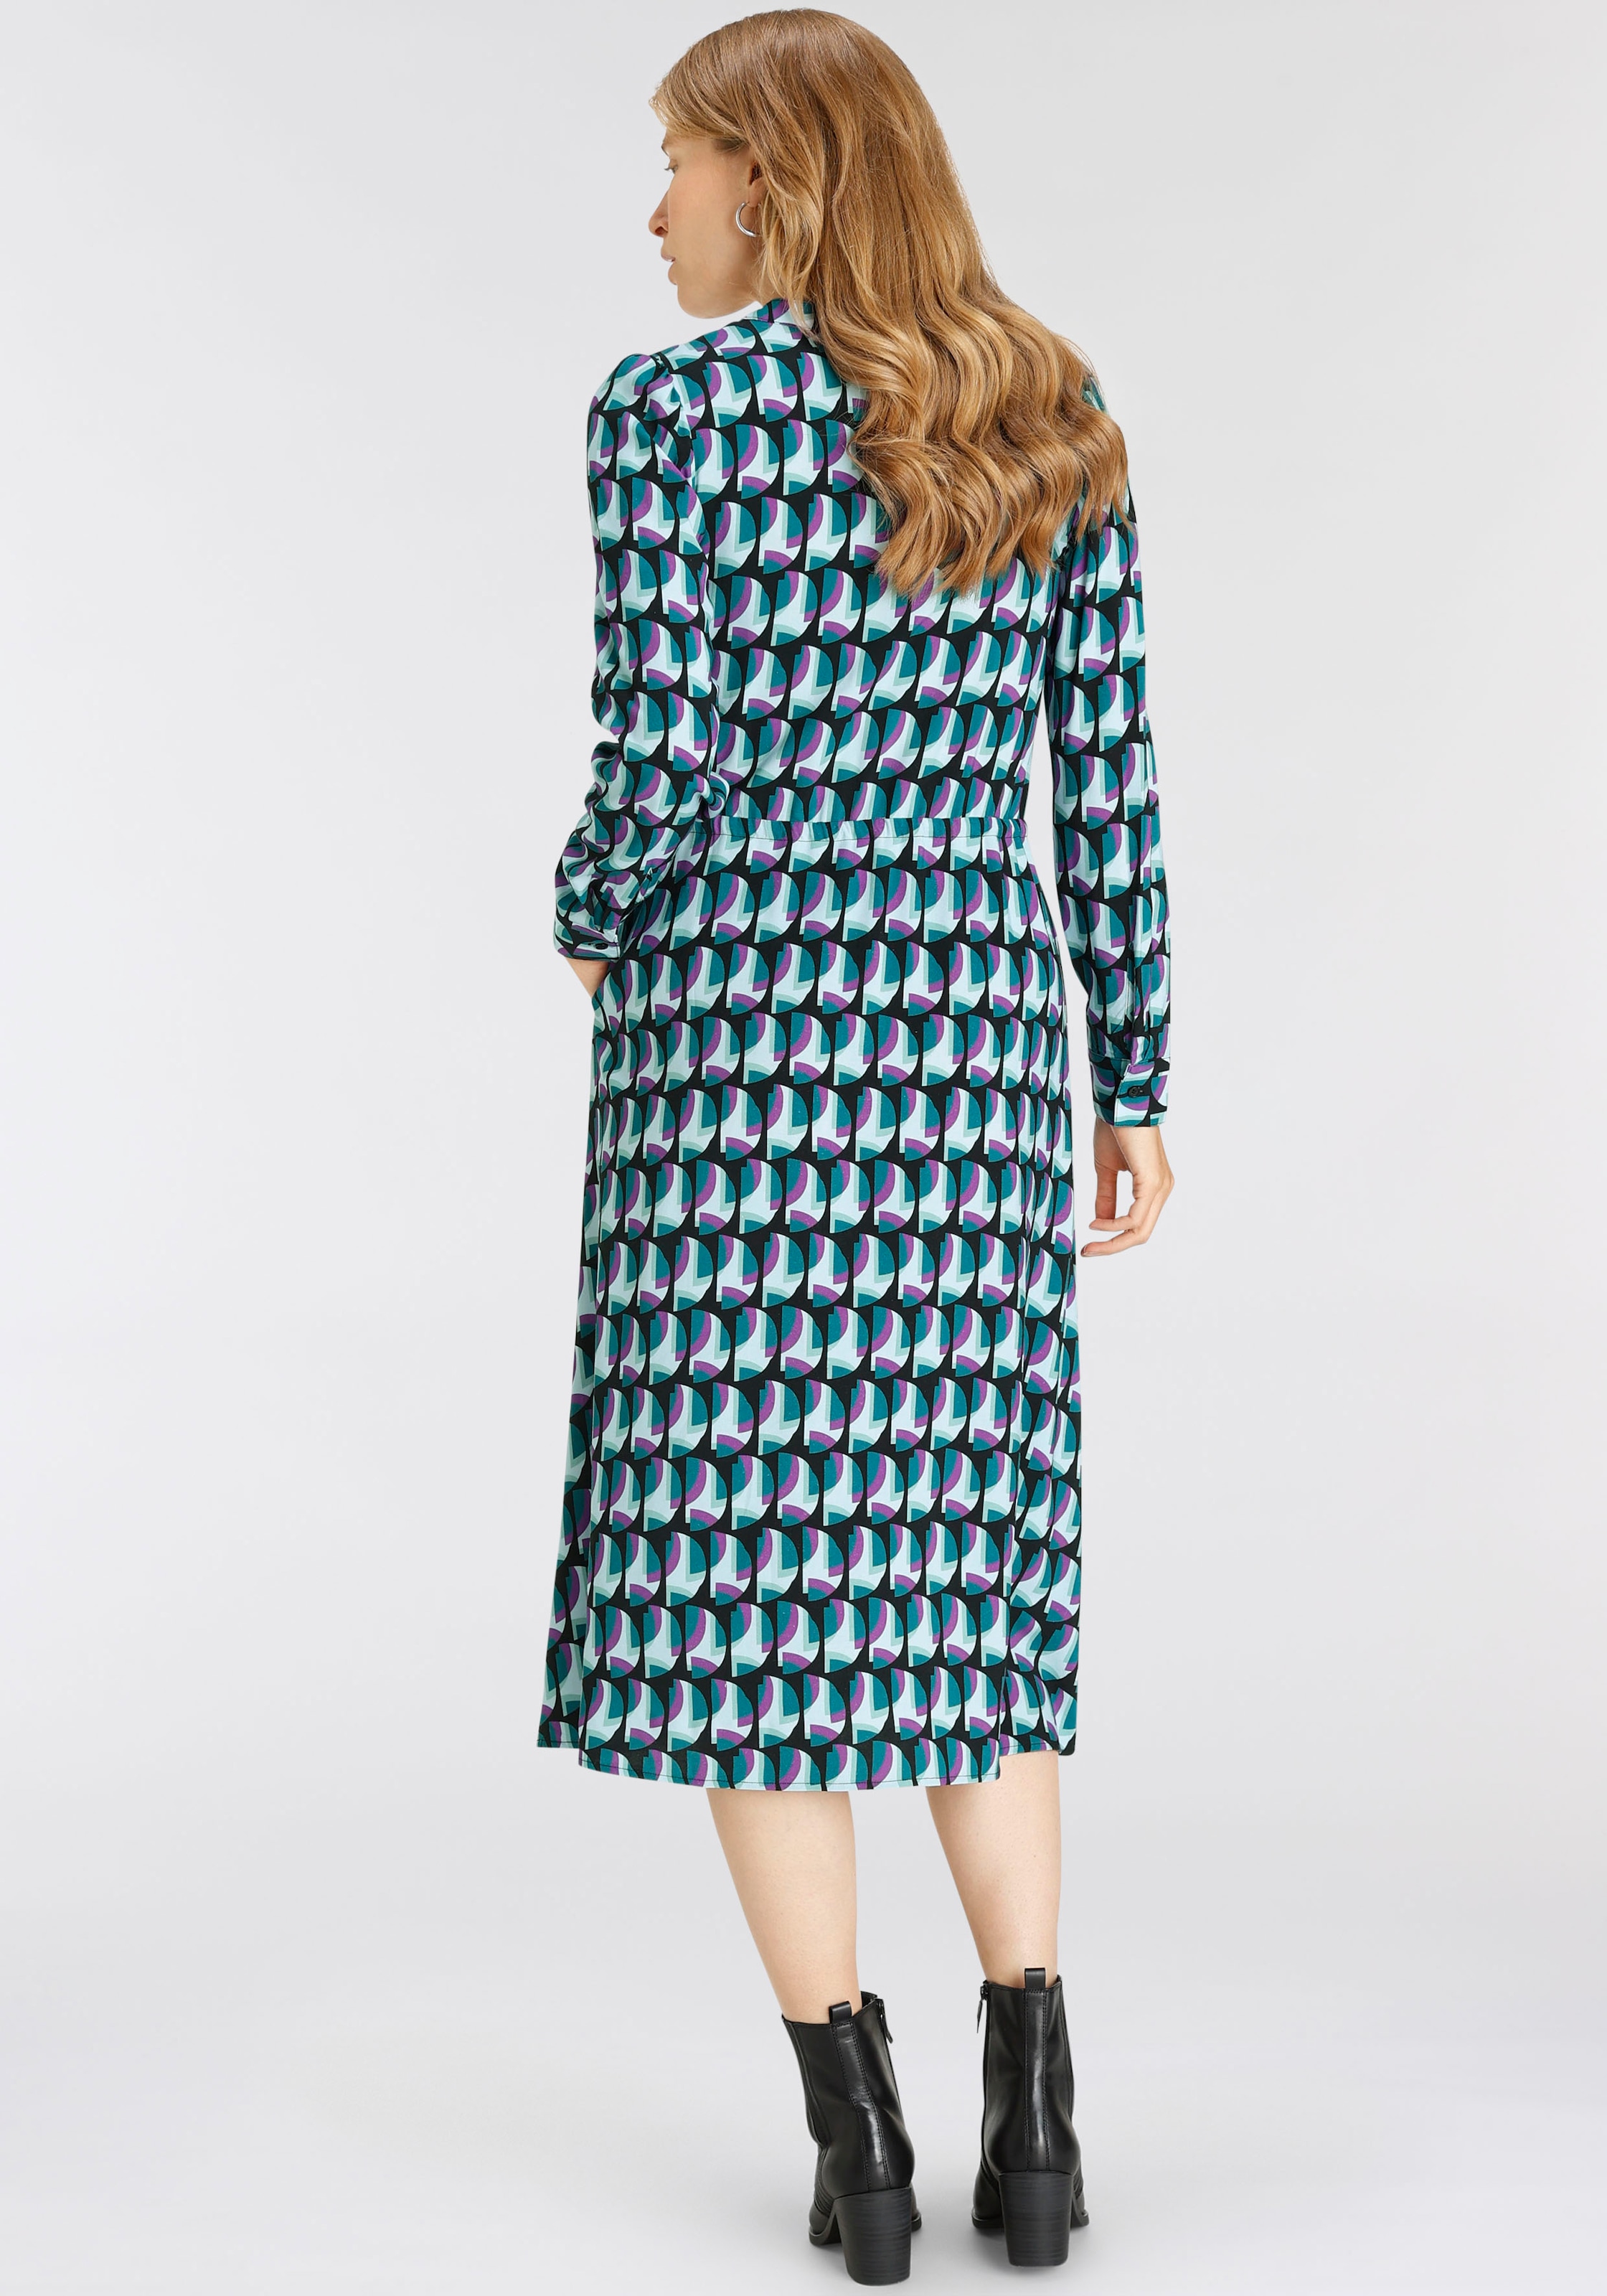 PARIS HECHTER mit Allover-Print ♕ Hemdblusenkleid, bei elegantem